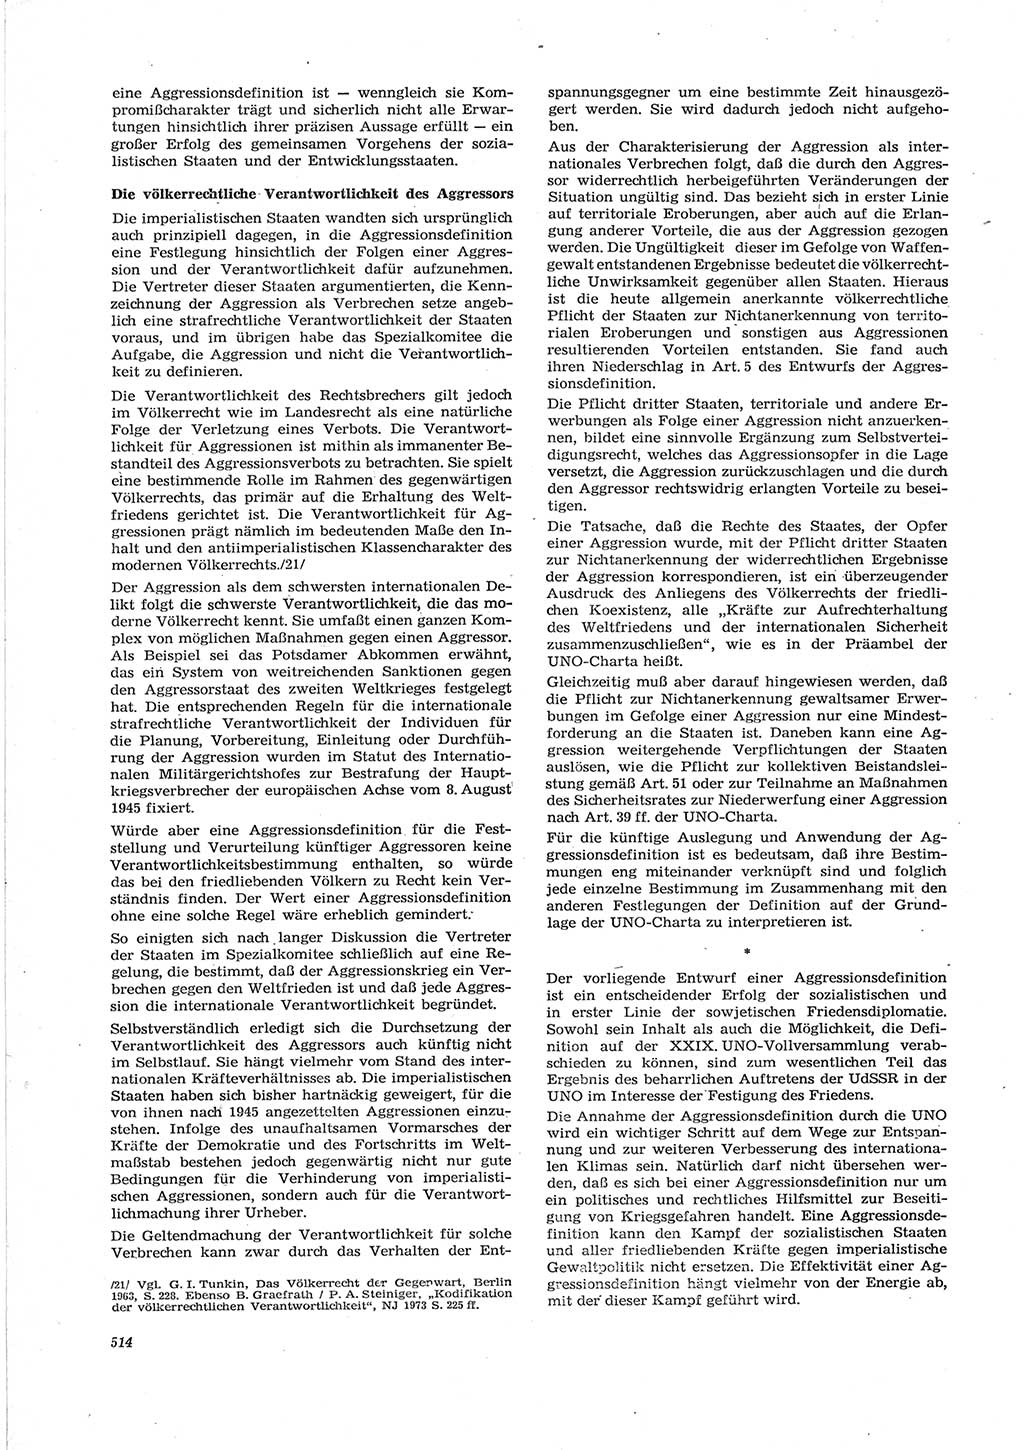 Neue Justiz (NJ), Zeitschrift für Recht und Rechtswissenschaft [Deutsche Demokratische Republik (DDR)], 28. Jahrgang 1974, Seite 514 (NJ DDR 1974, S. 514)